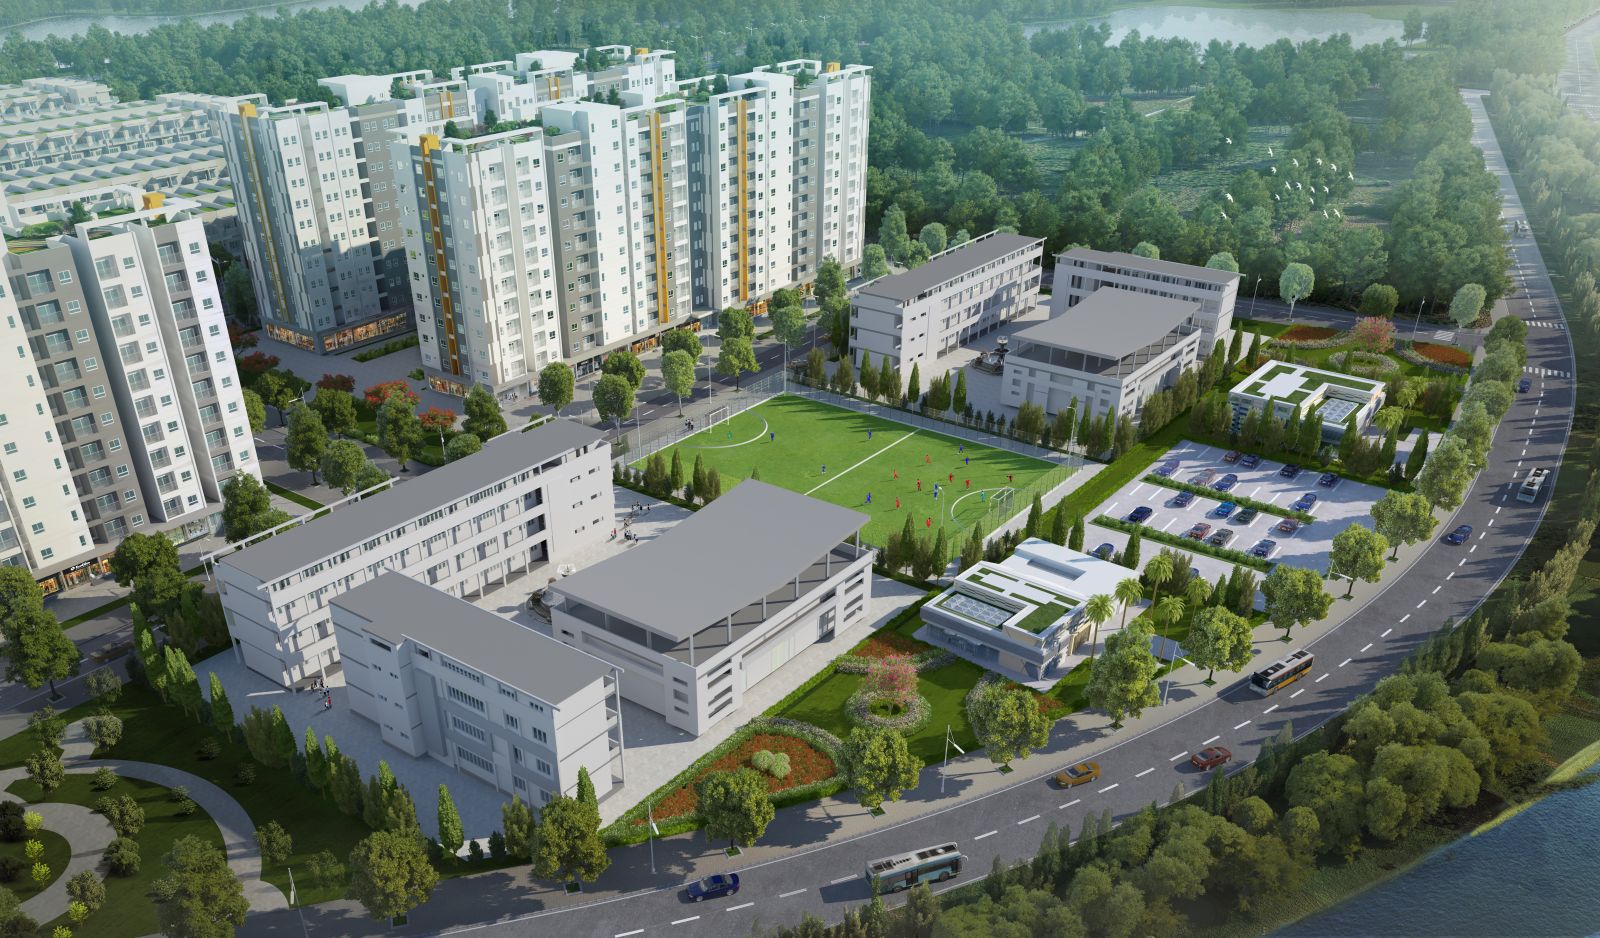 Dành phần lớn diện tích để xây dựng không gian phát triển cộng đồng, Him Lam Green Park - “thước đo” của đô thị sáng tạo và sống tốt.